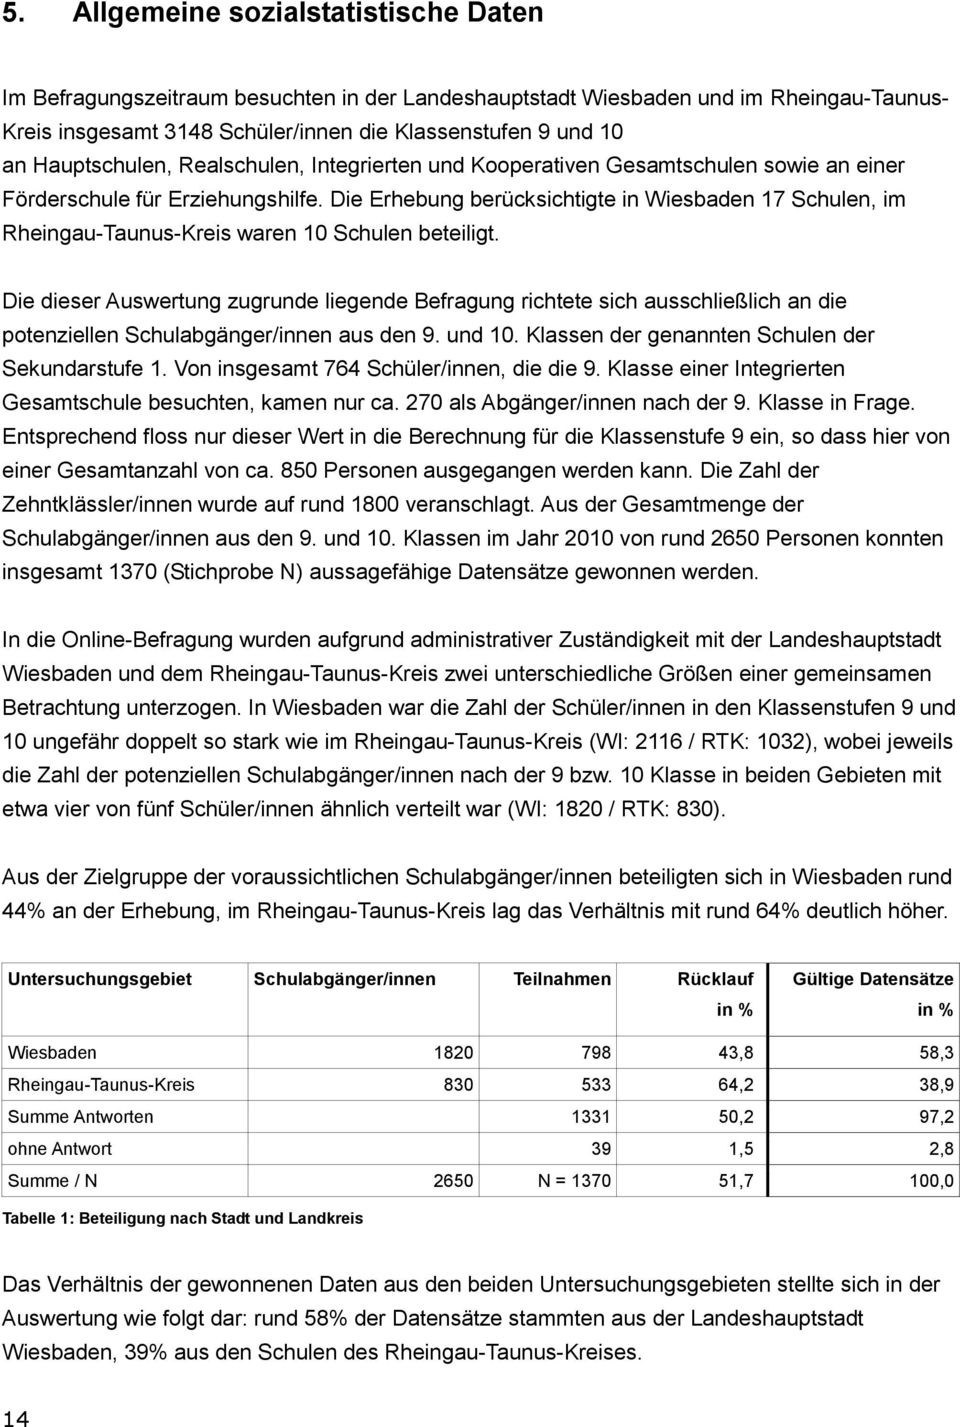 Die Erhebung berücksichtigte in Wiesbaden 17 Schulen, im Rheingau-Taunus-Kreis waren 10 Schulen beteiligt.